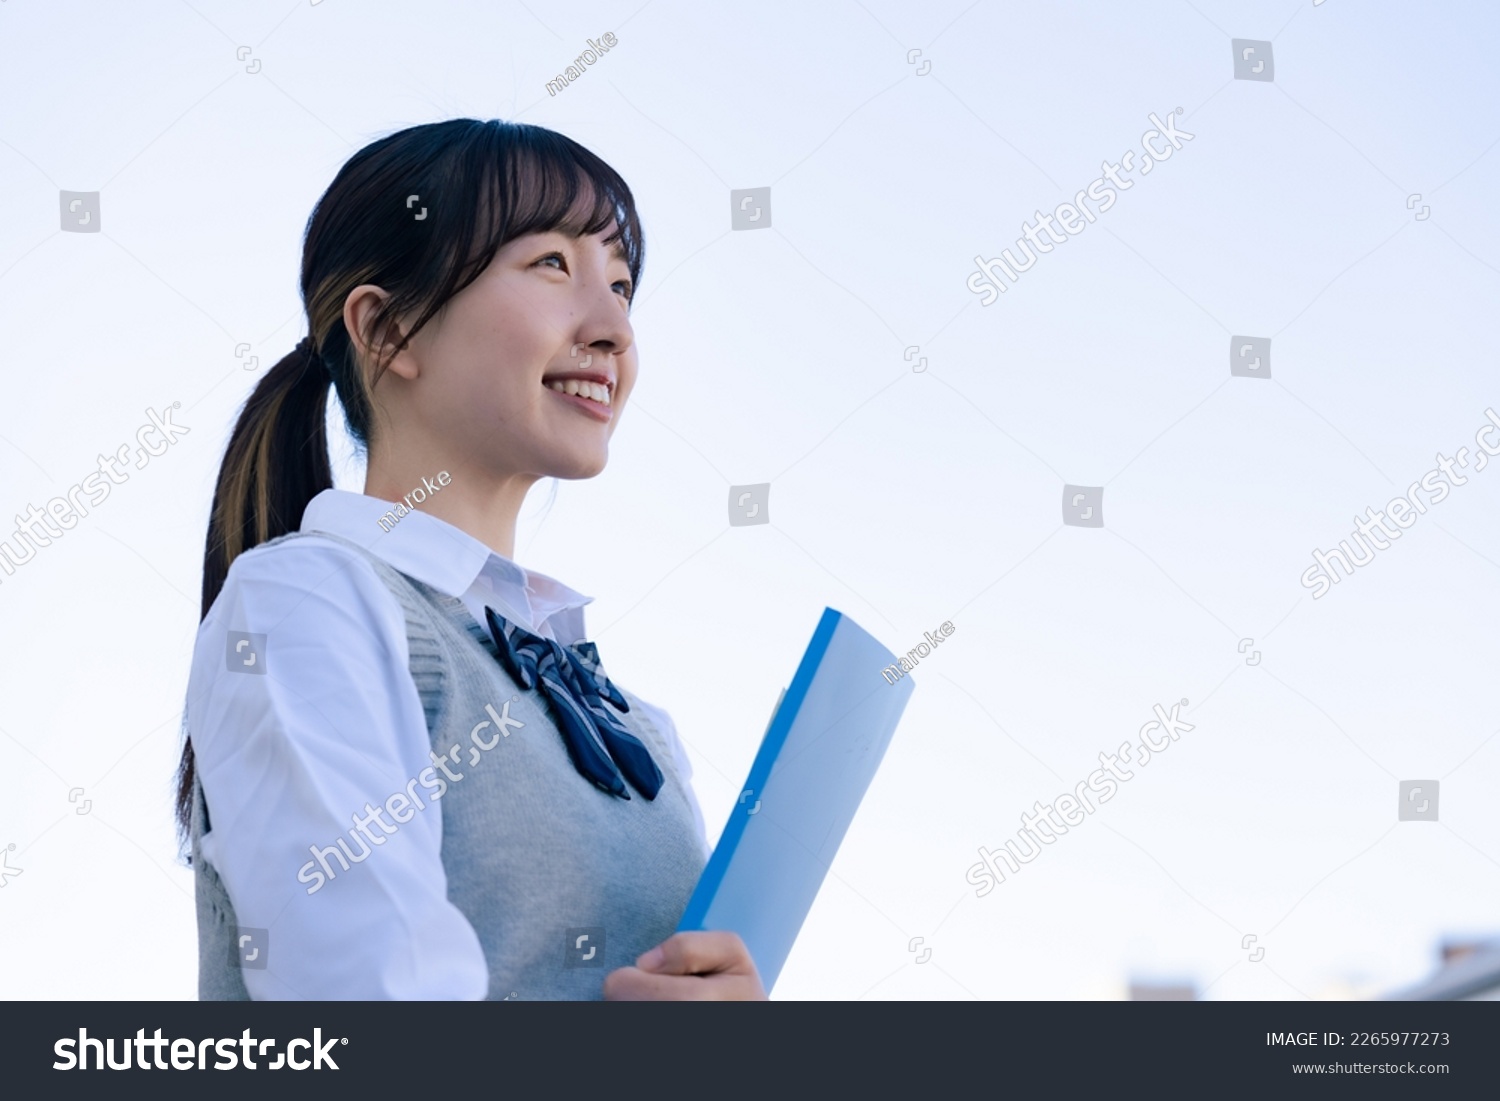 A high school girl in uniform looking far outside #2265977273